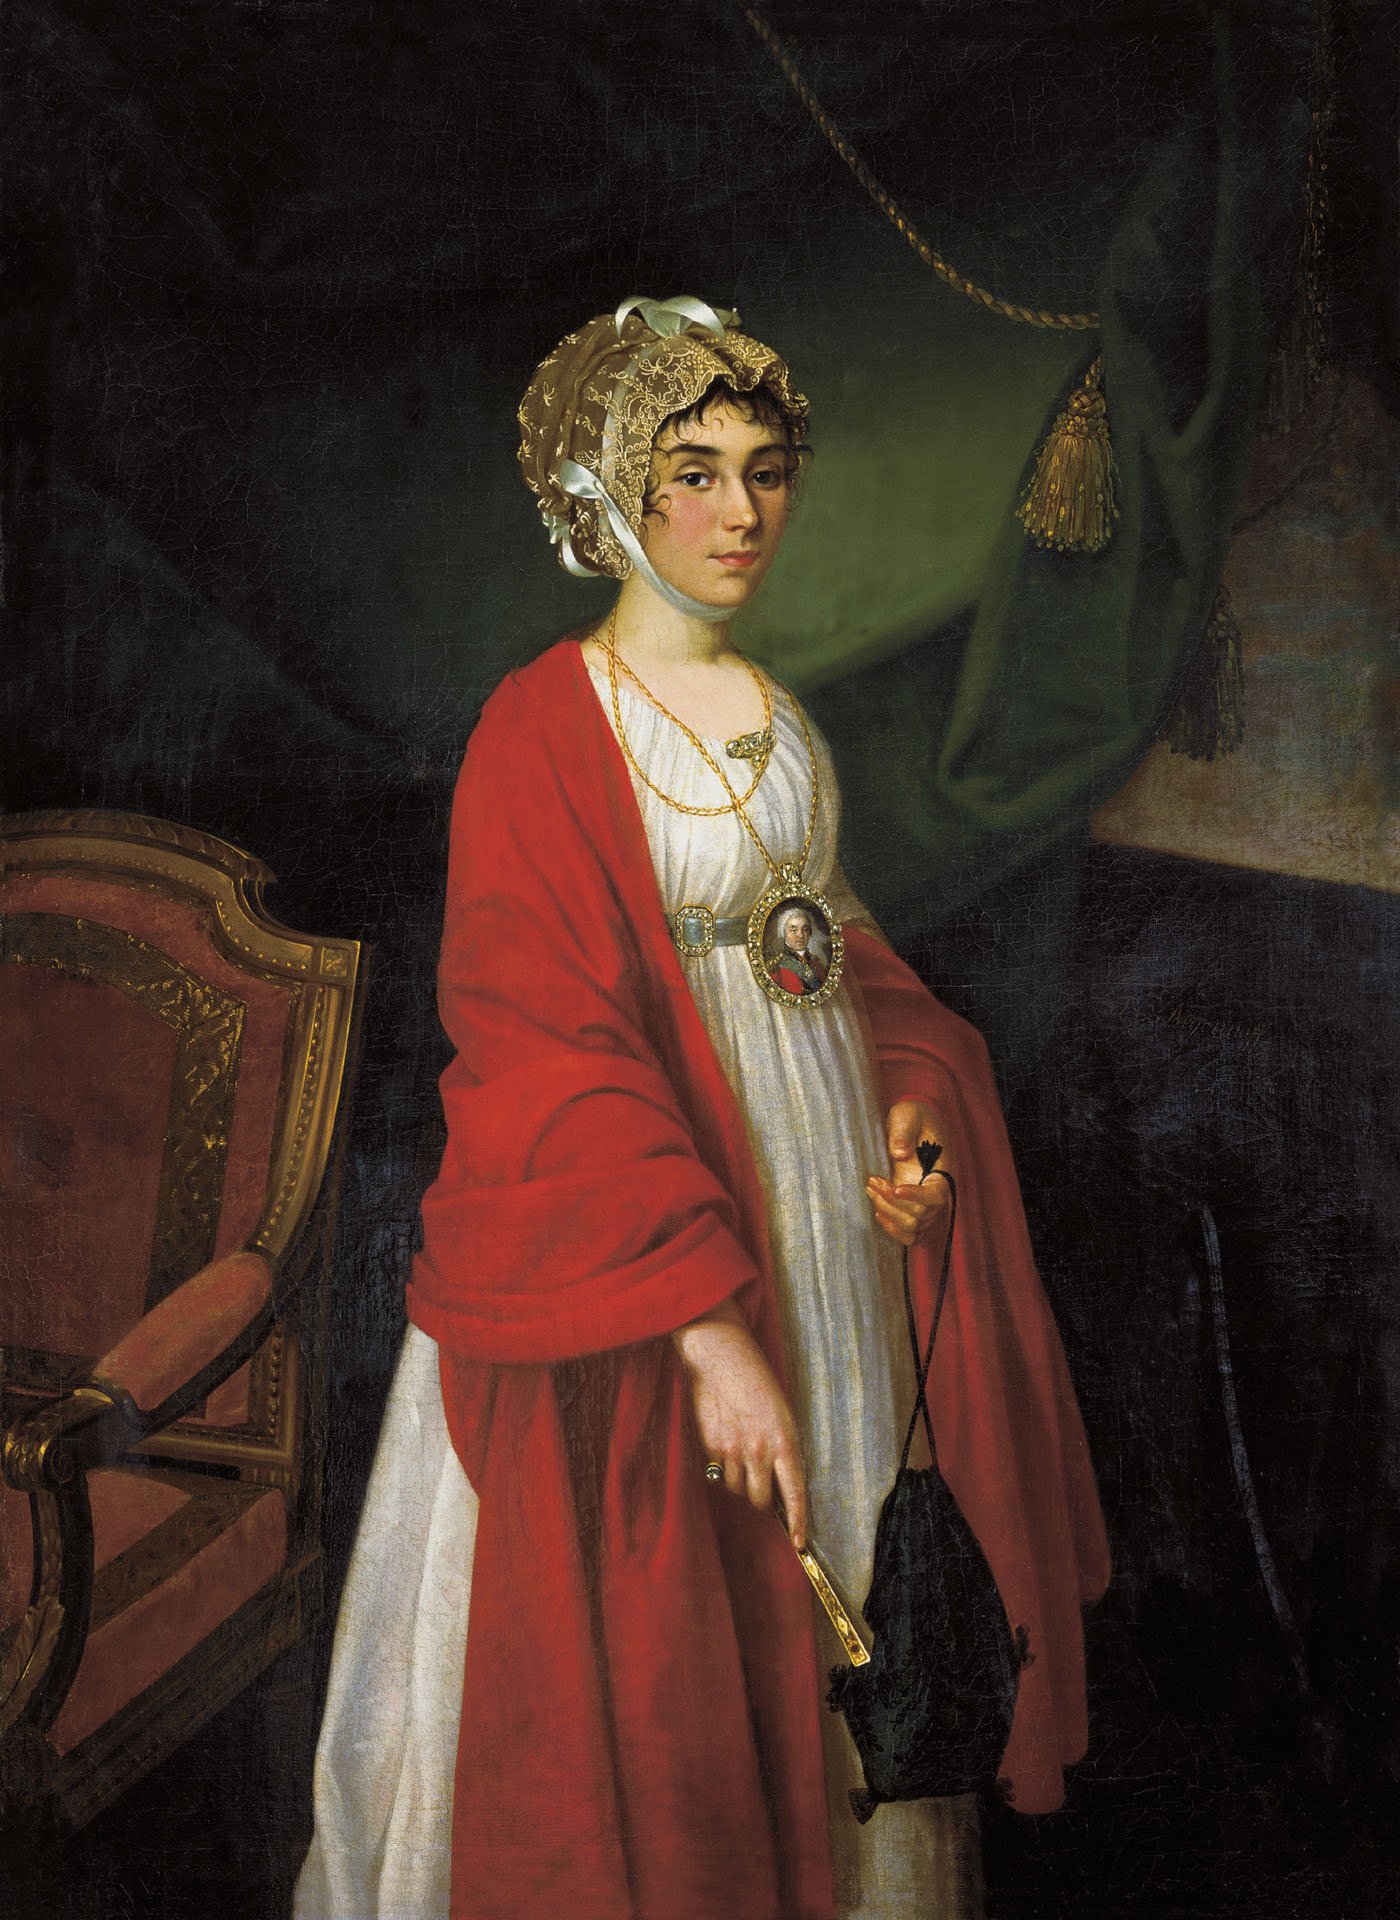 Praskovia Kovalyova-Zhemchugova (1768-07-20 – 1803-02-23). Operatic sopranos